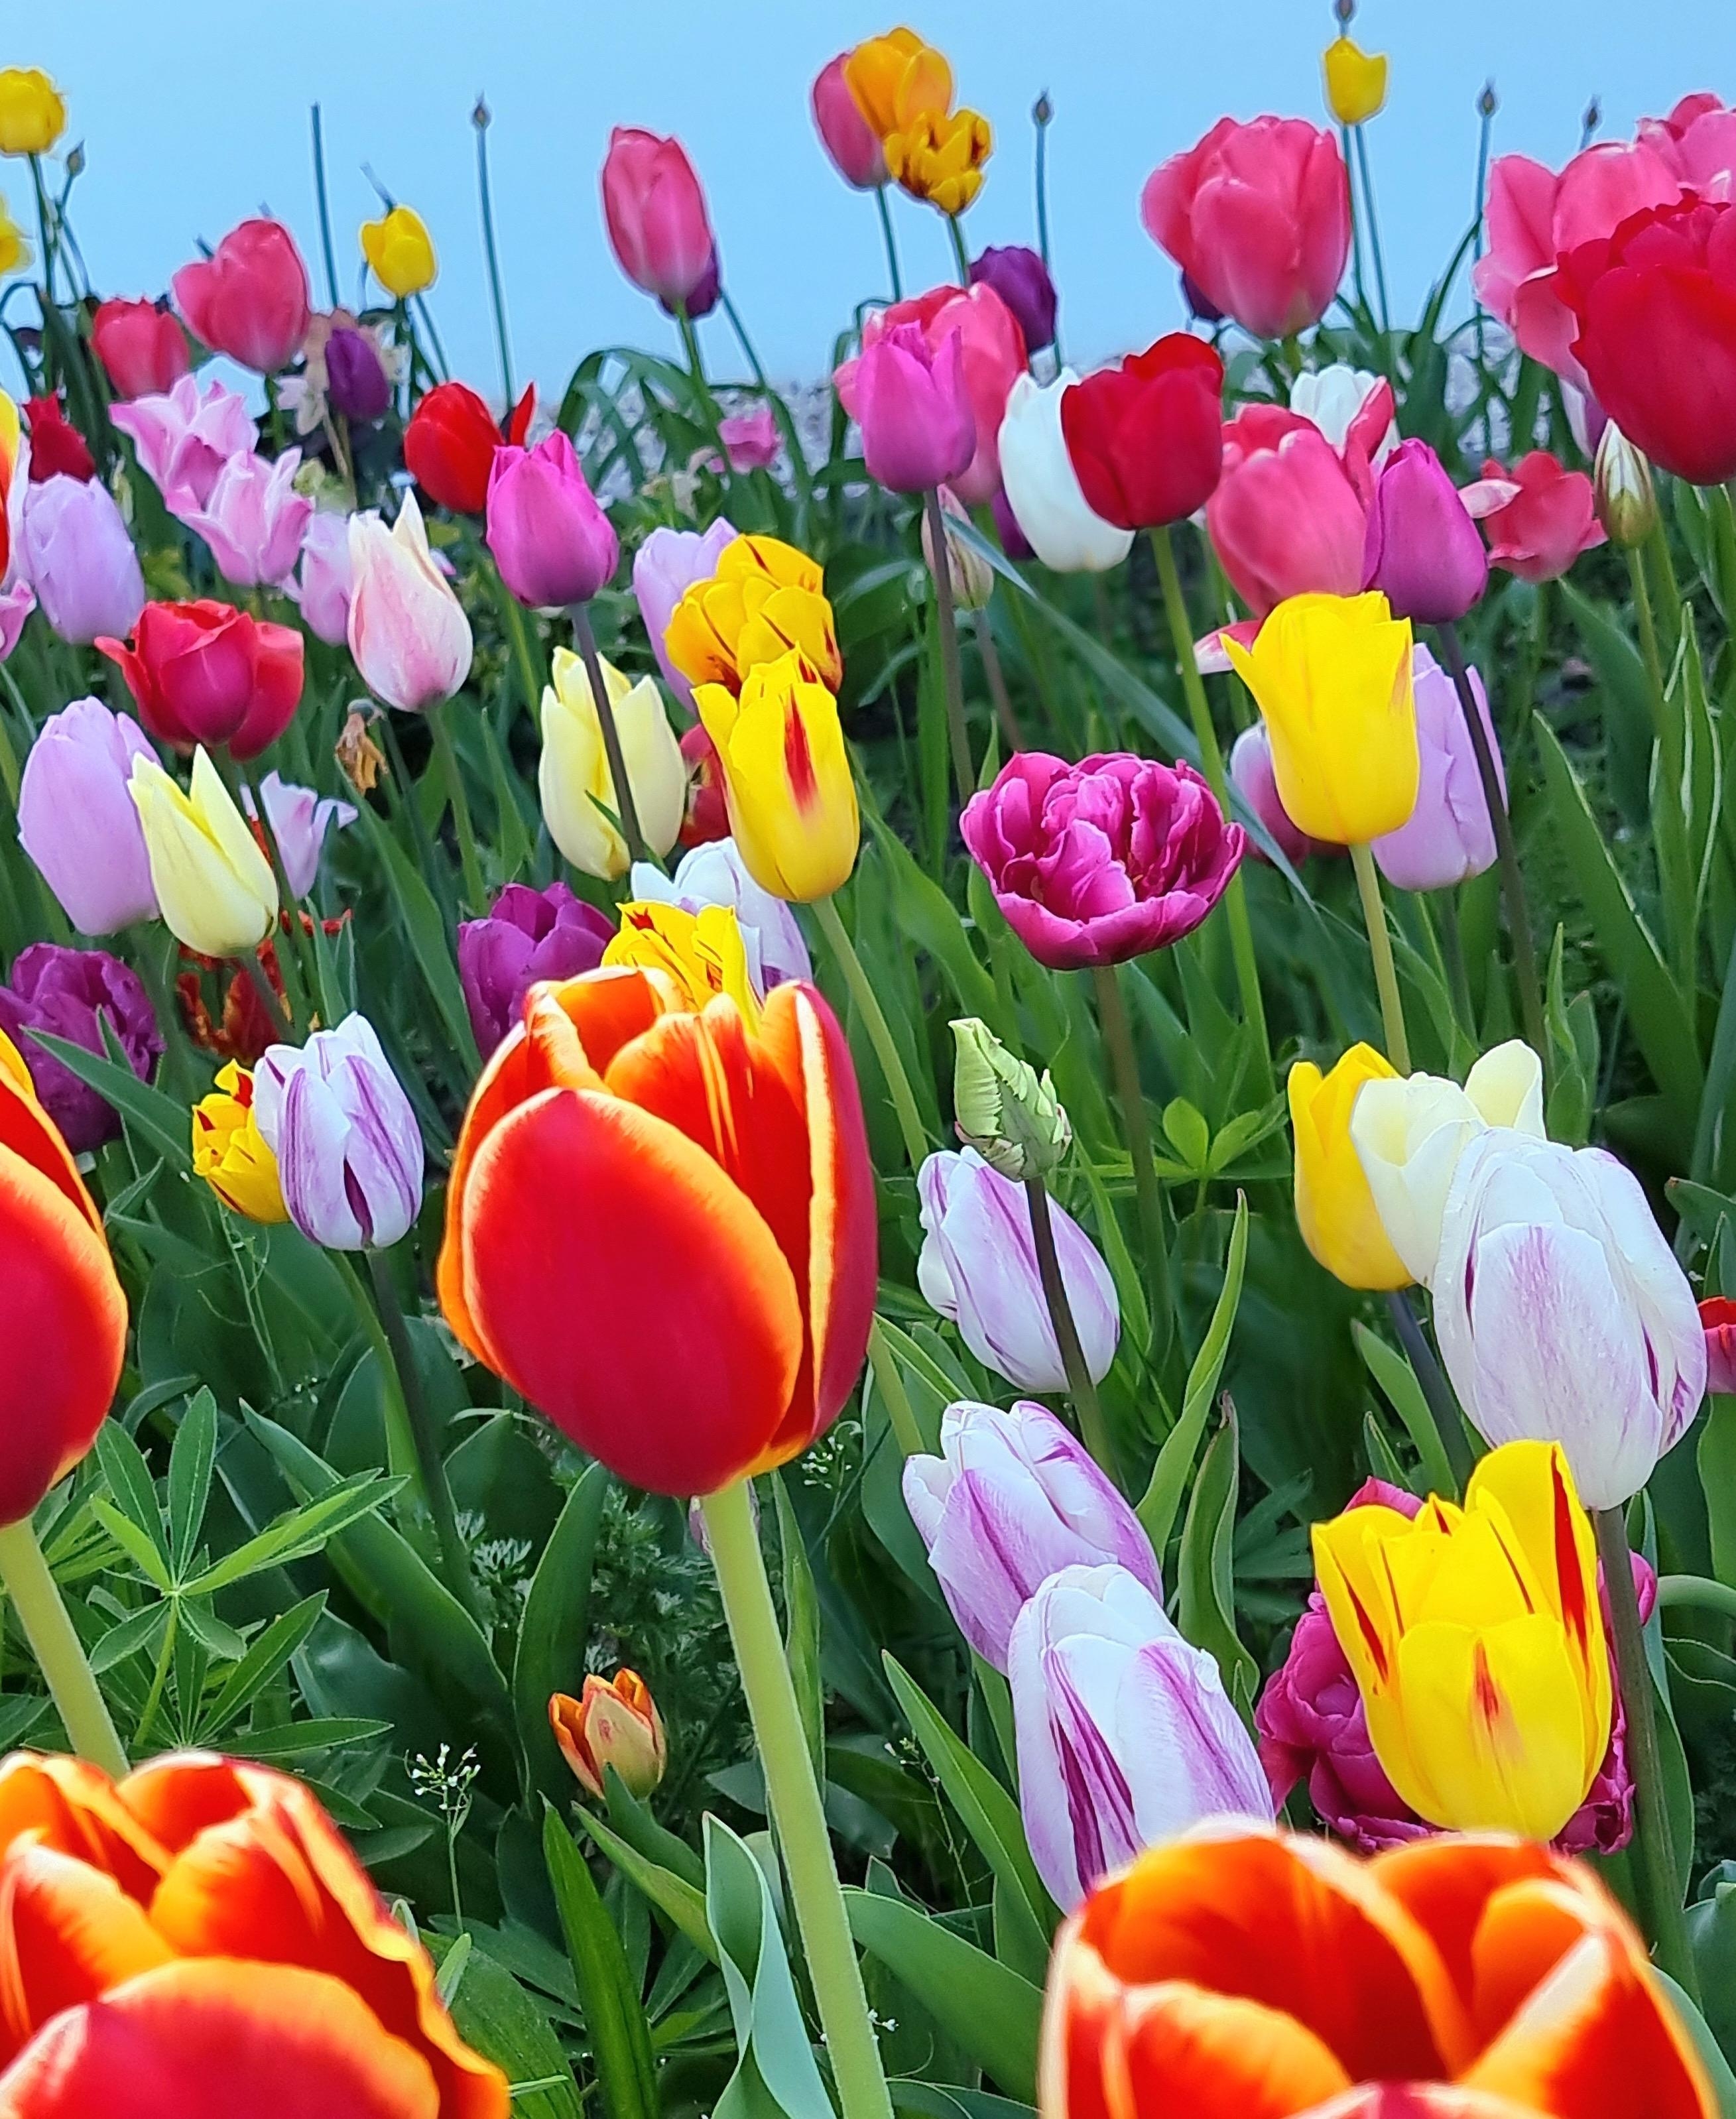 Ich nenn es mal #Tulpomania 🩷💛❤️ #Blumenliebe #Natur #Tulpen #Garten #Frühling #Colourful #Osterzeit #Greenliving #Spring #Pflanzenliebe 